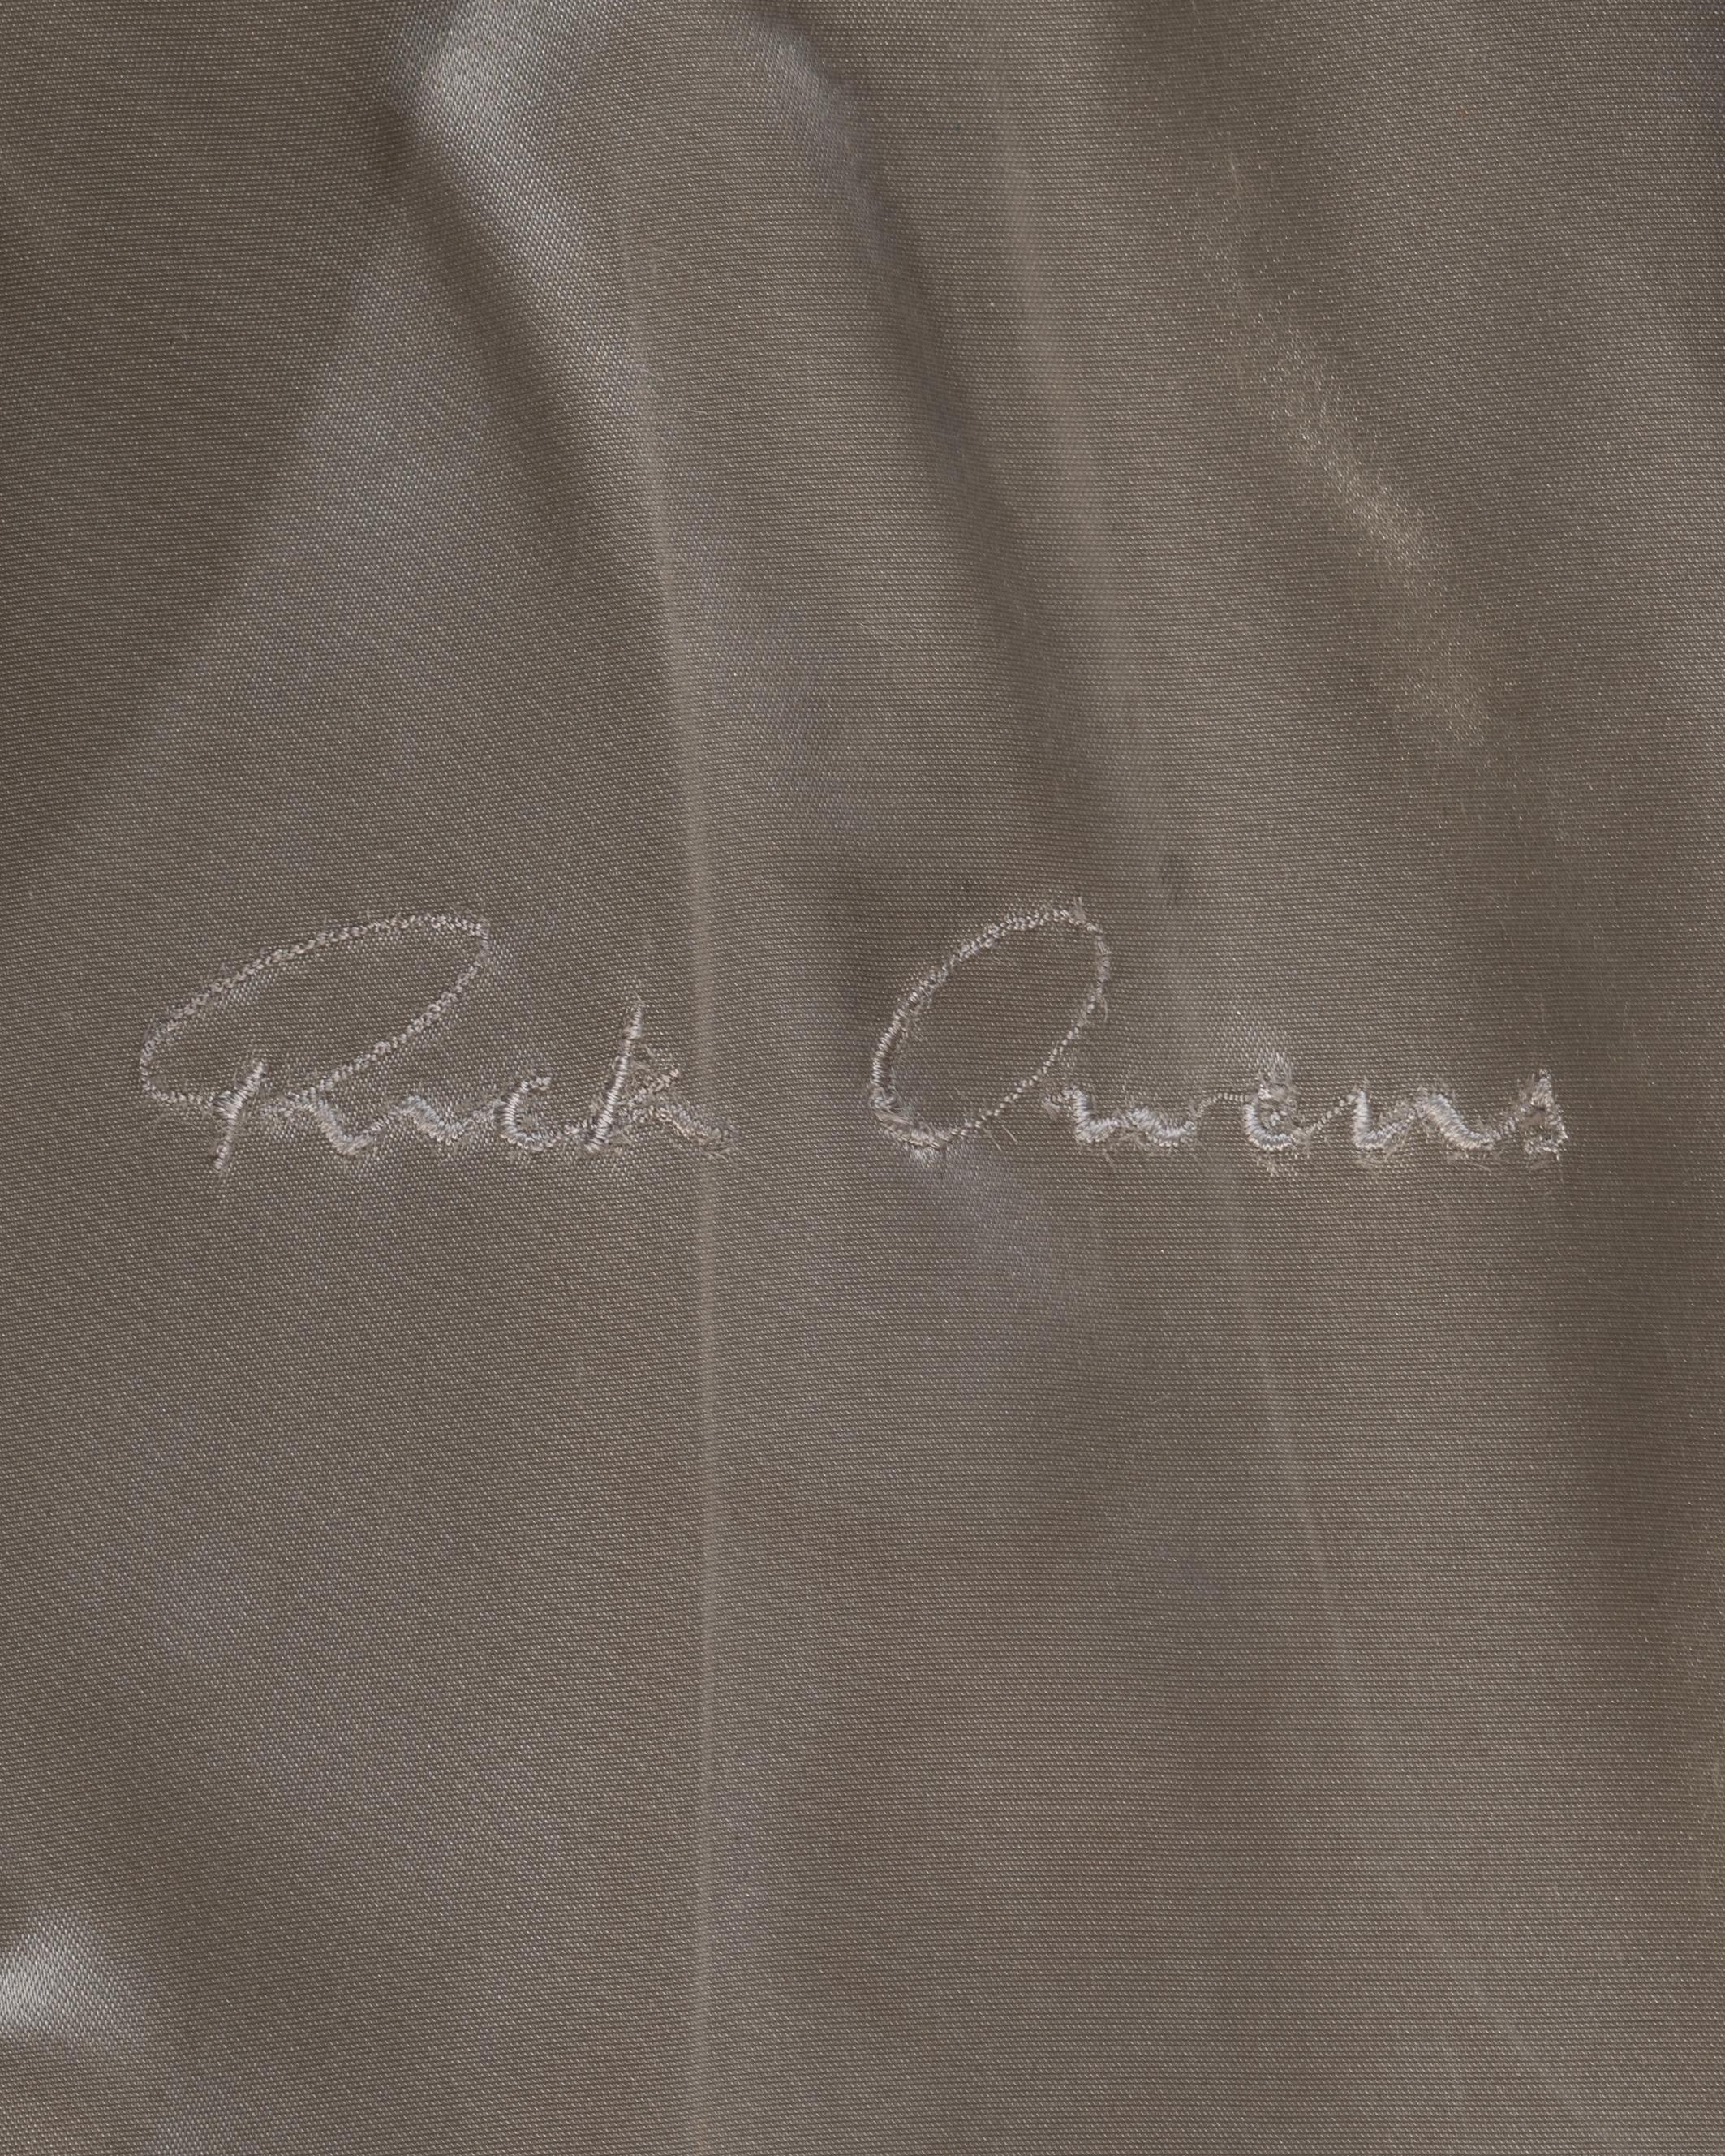 Veste de Rick Owens fabriquée à partir de sacs militaires déclassés, vers 1998 14